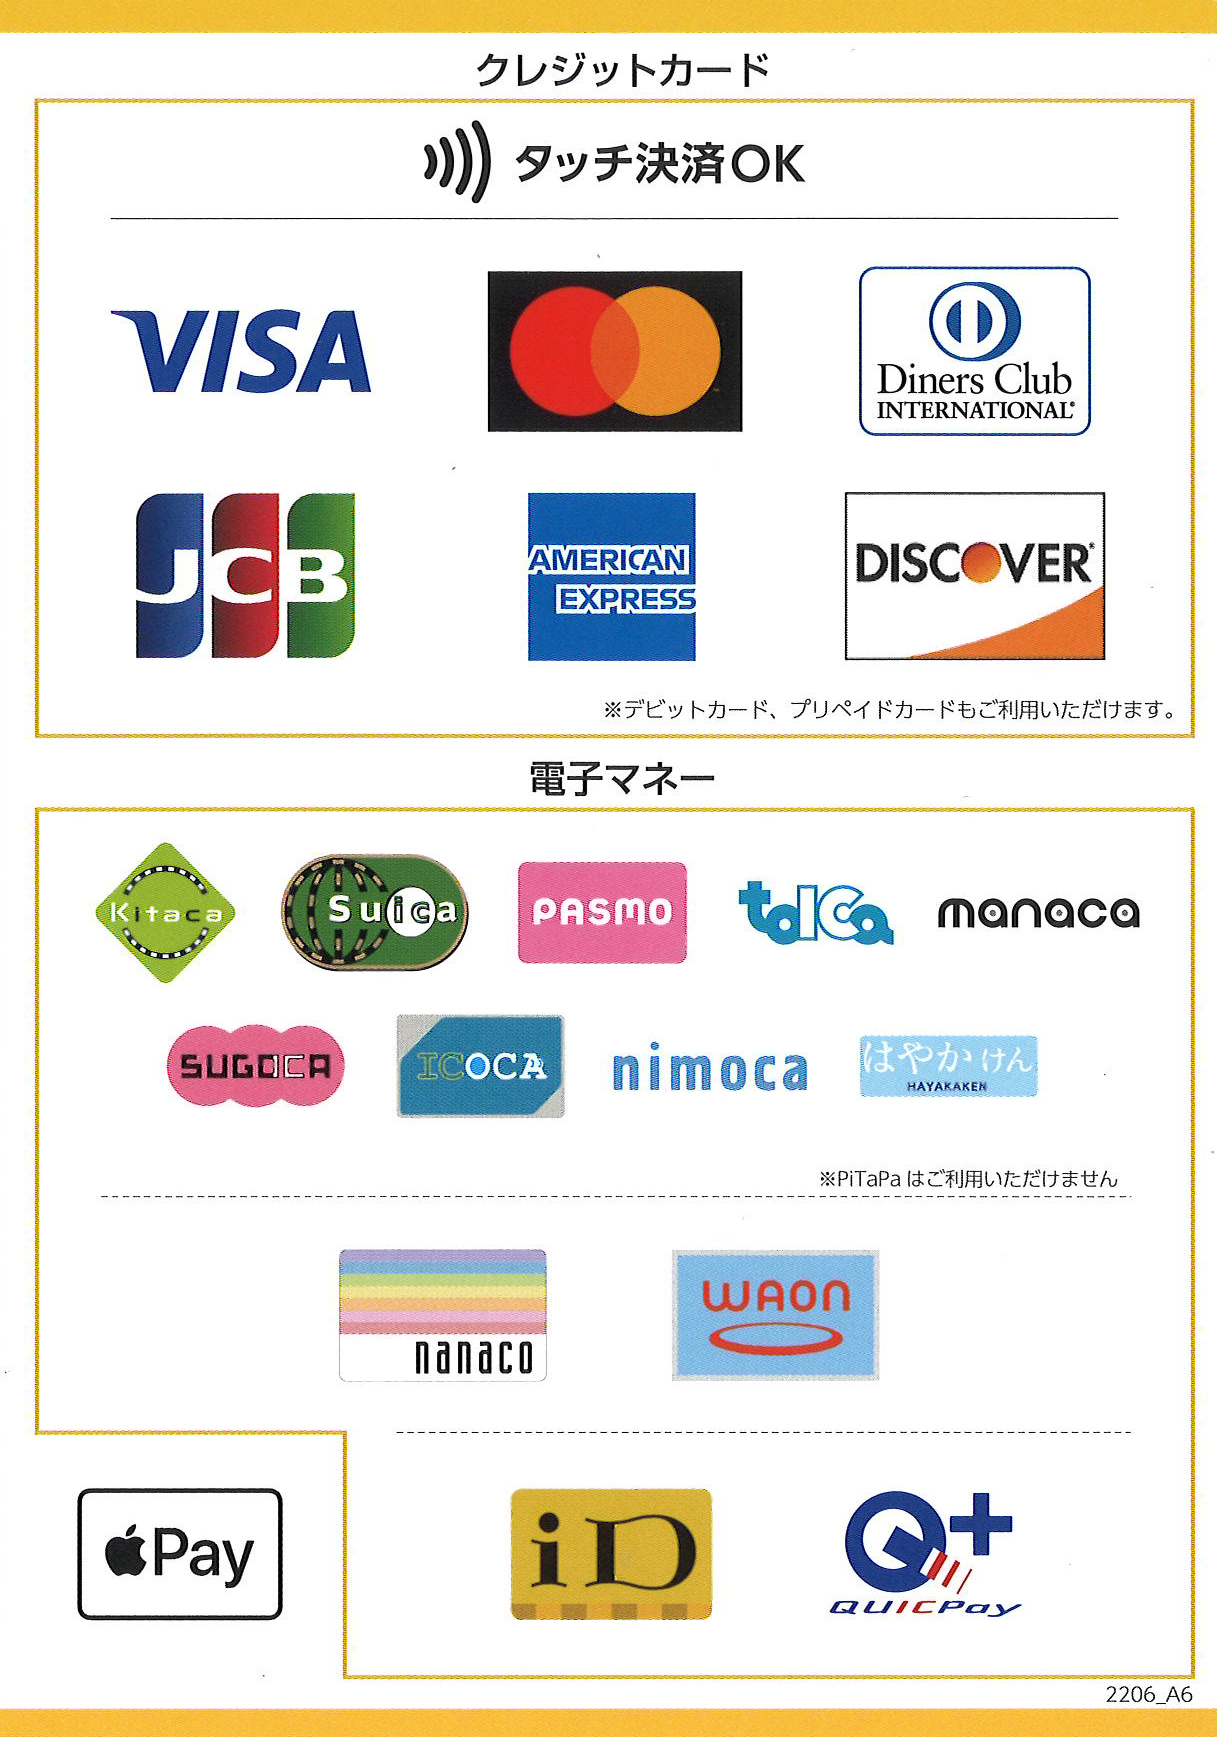 使用できるクレジットカード・電子マネーの例